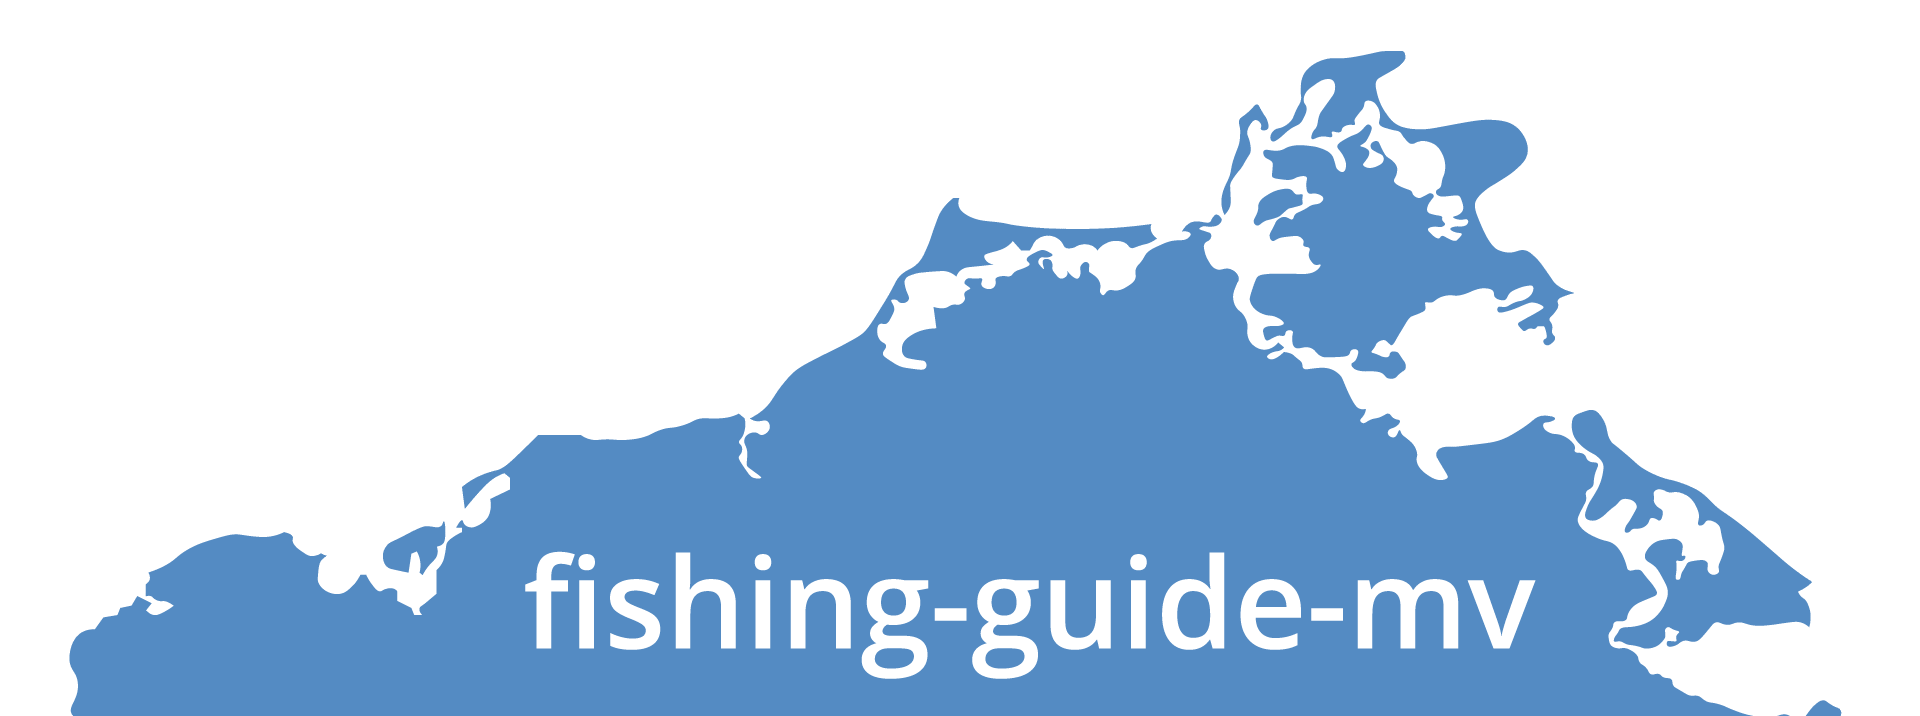 Logo fishing-guide-mv